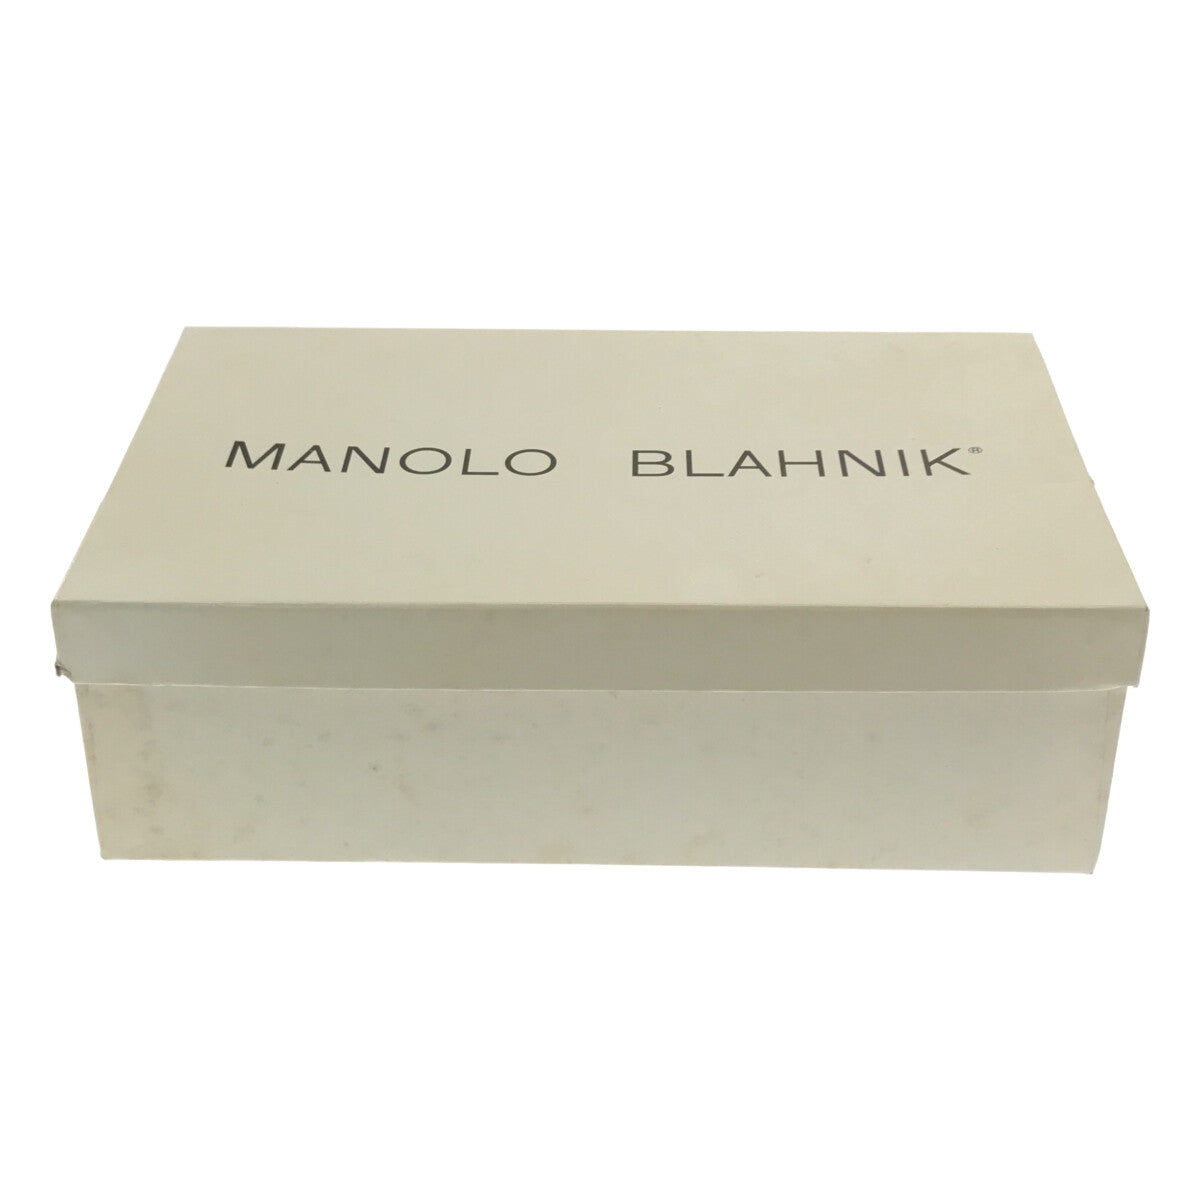 【美品】  MANOLO BLAHNIK / マノロブラニク | M-LISTONY リストニー スエード ポインテッドトゥ チャンキーヒールパンプス | 36 | レッド | レディース